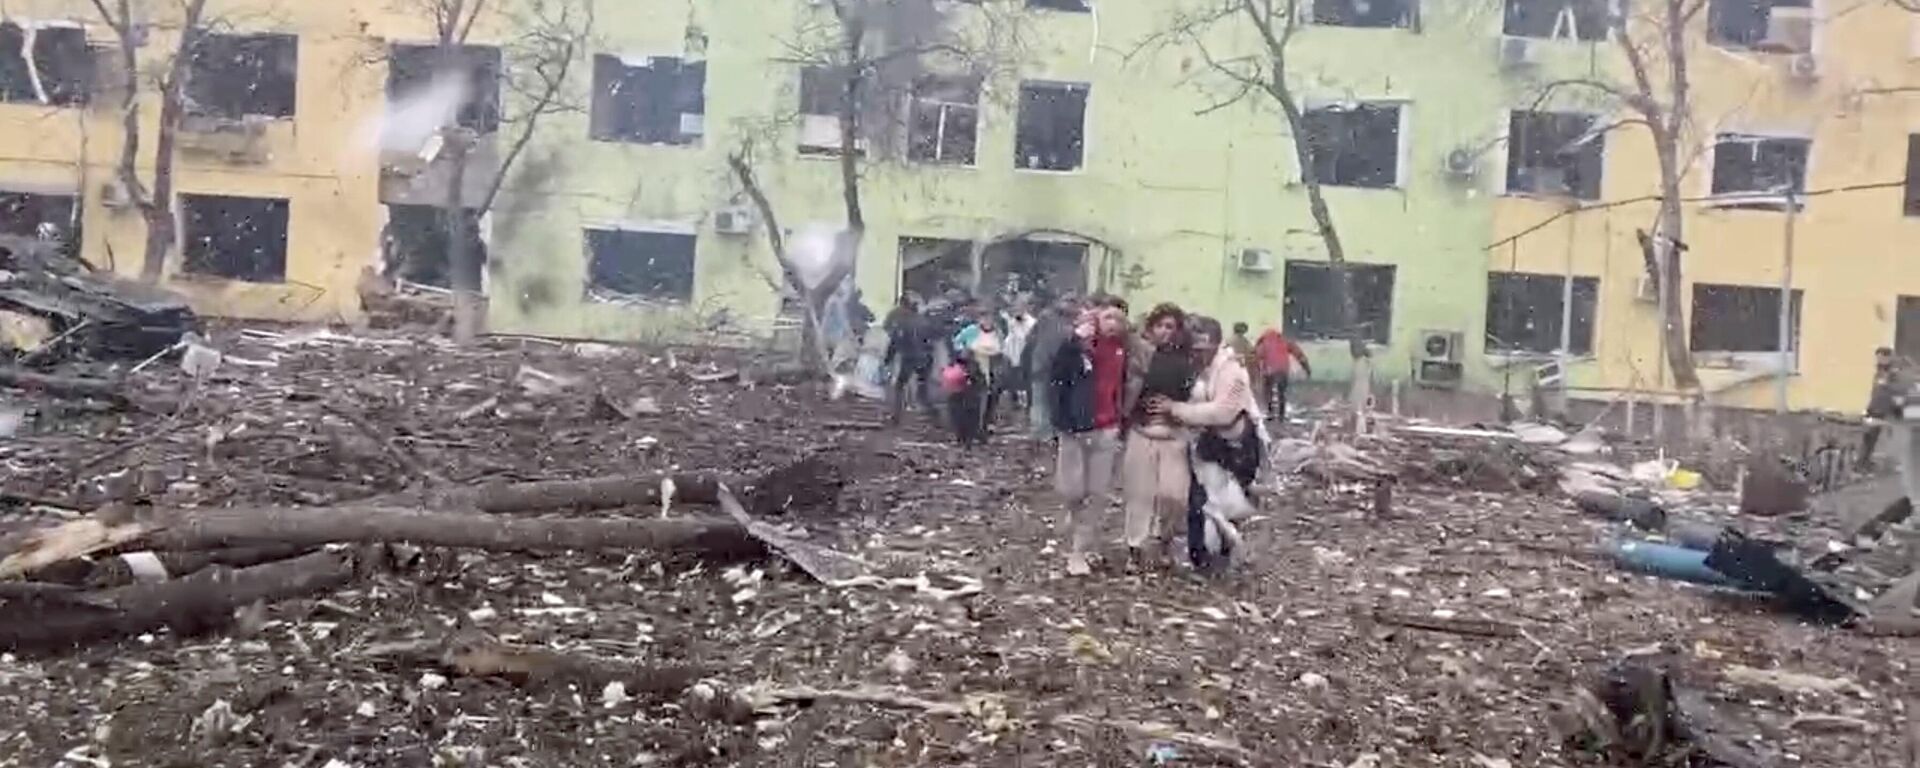 Las imágenes del bombardeo de un supuesto hospital de maternidad en la ciudad de Mariúpol, en Ucrania - Sputnik Mundo, 1920, 02.04.2022